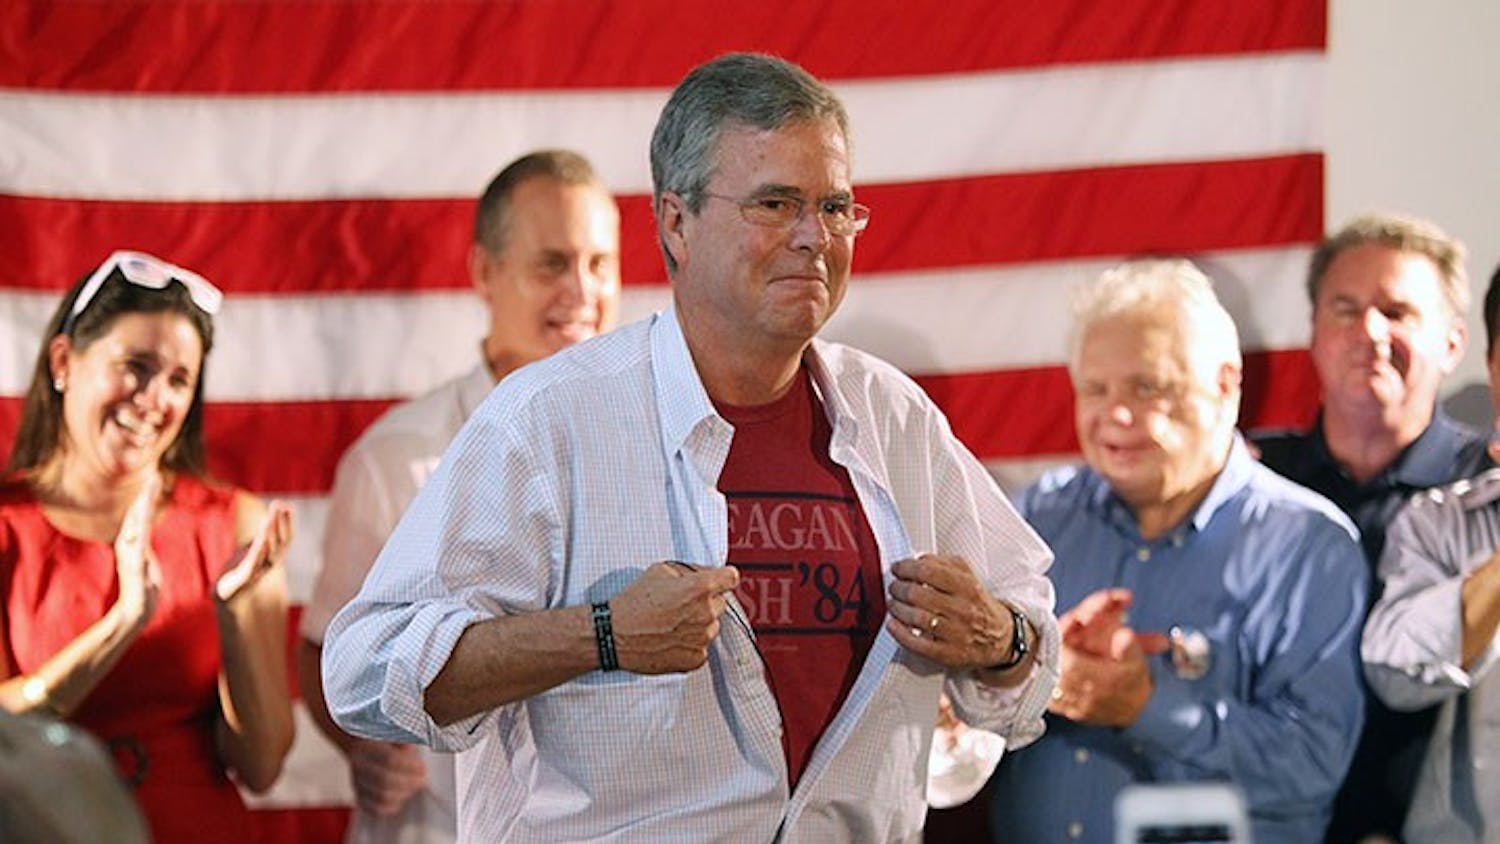 Republican presidential candidate Jeb Bush at a campaign event in Coral Gables, Fla., on Saturday, Sept. 12, 2015. (Roberto Koltun/El Nuevo Herald/TNS)